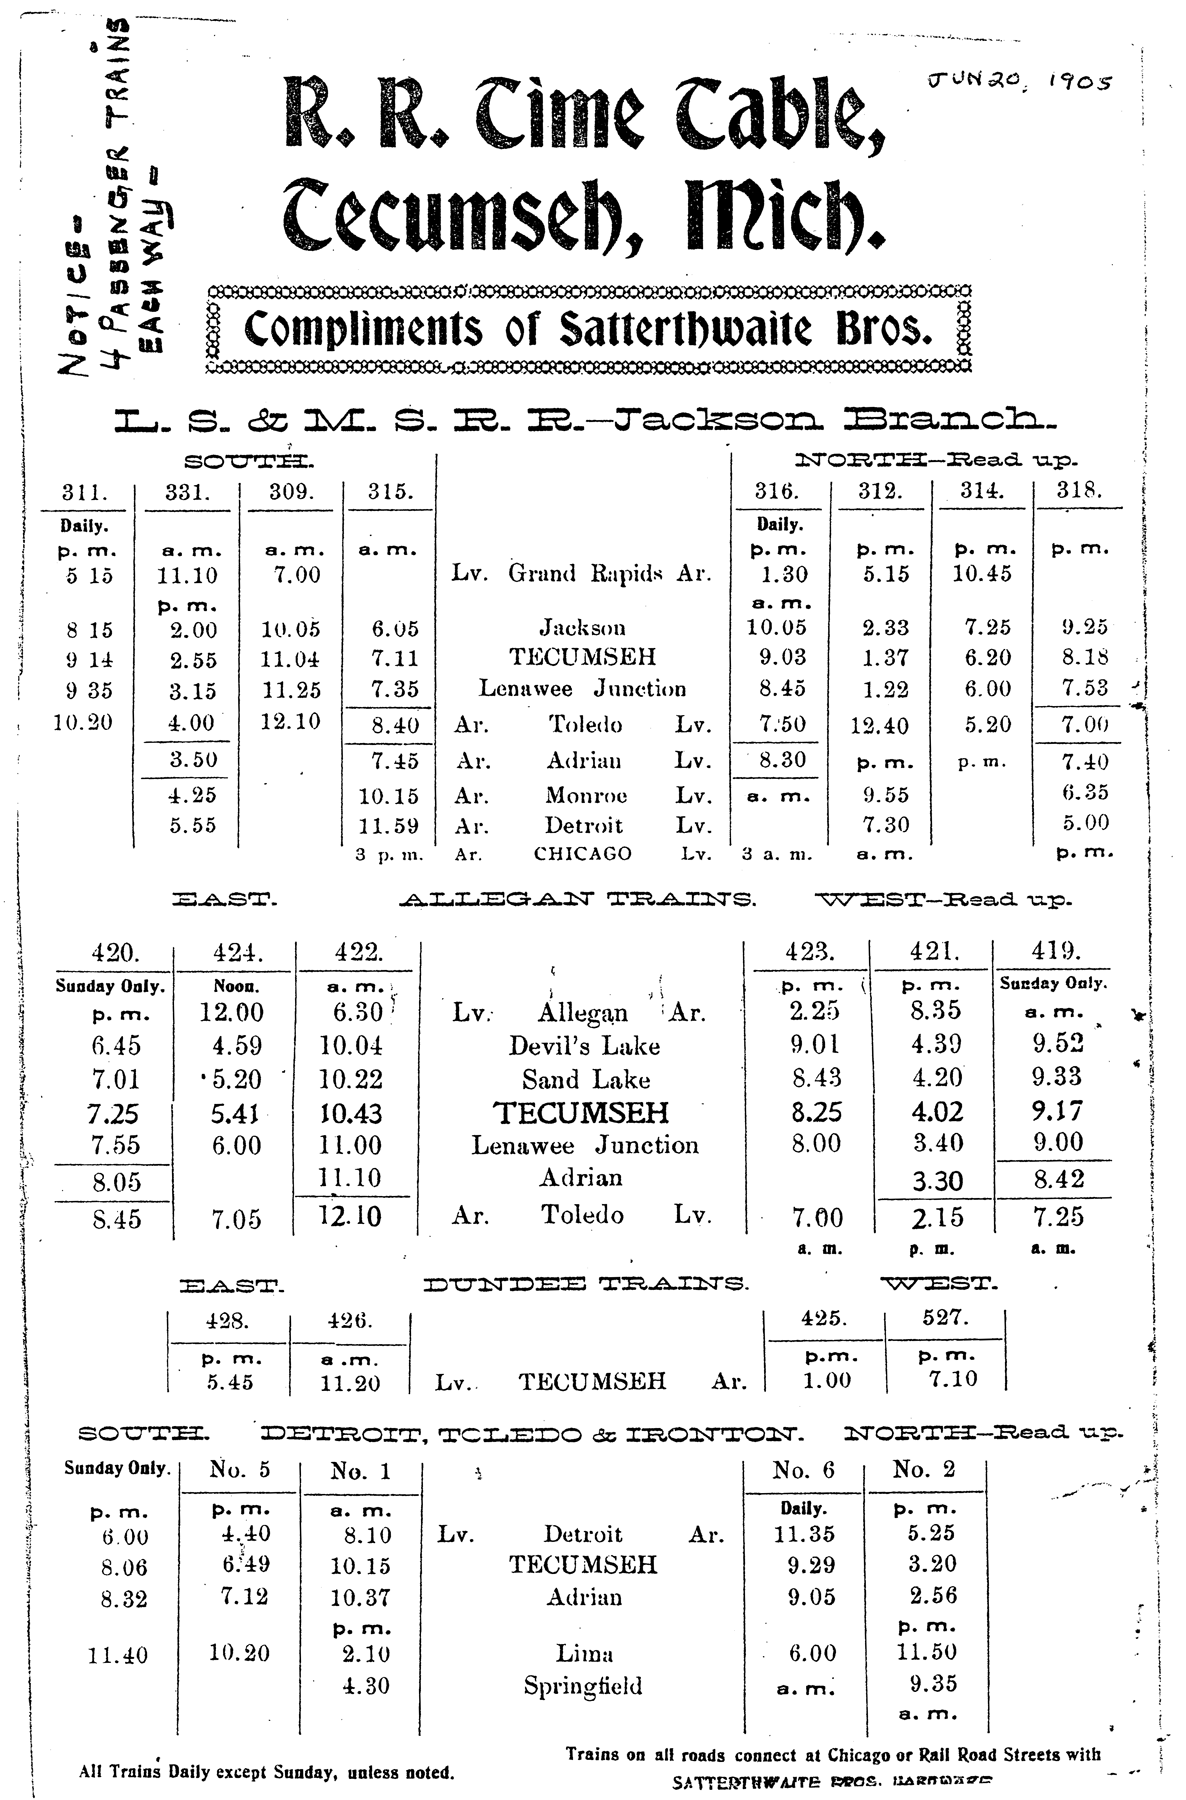 Tecumseh schedule card 1908